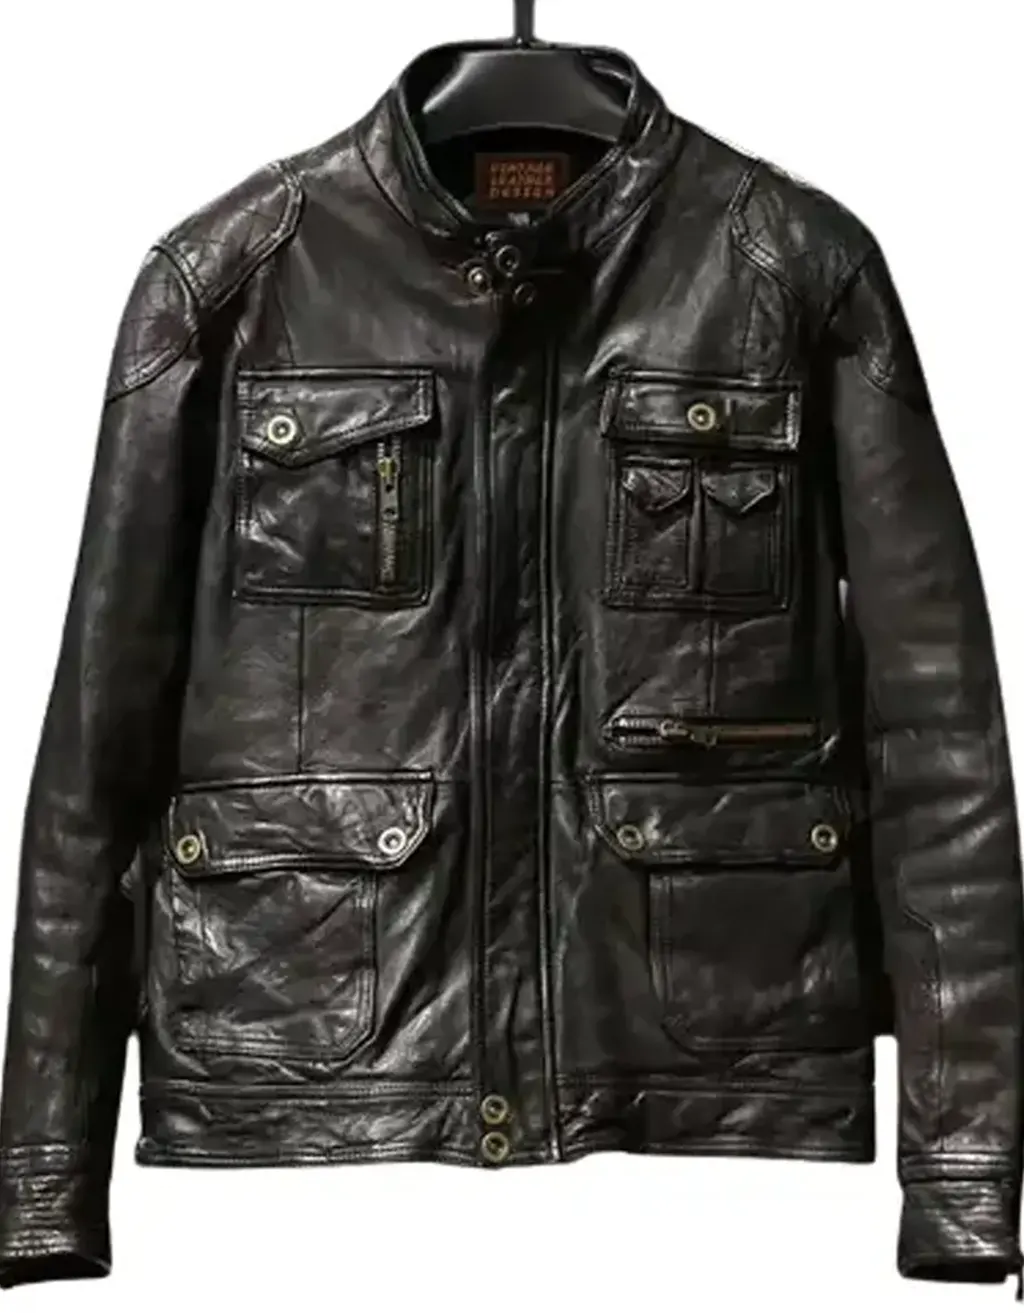 EXO’s Mini-Album KAI Rover Teaser Black Biker Leather Jacket